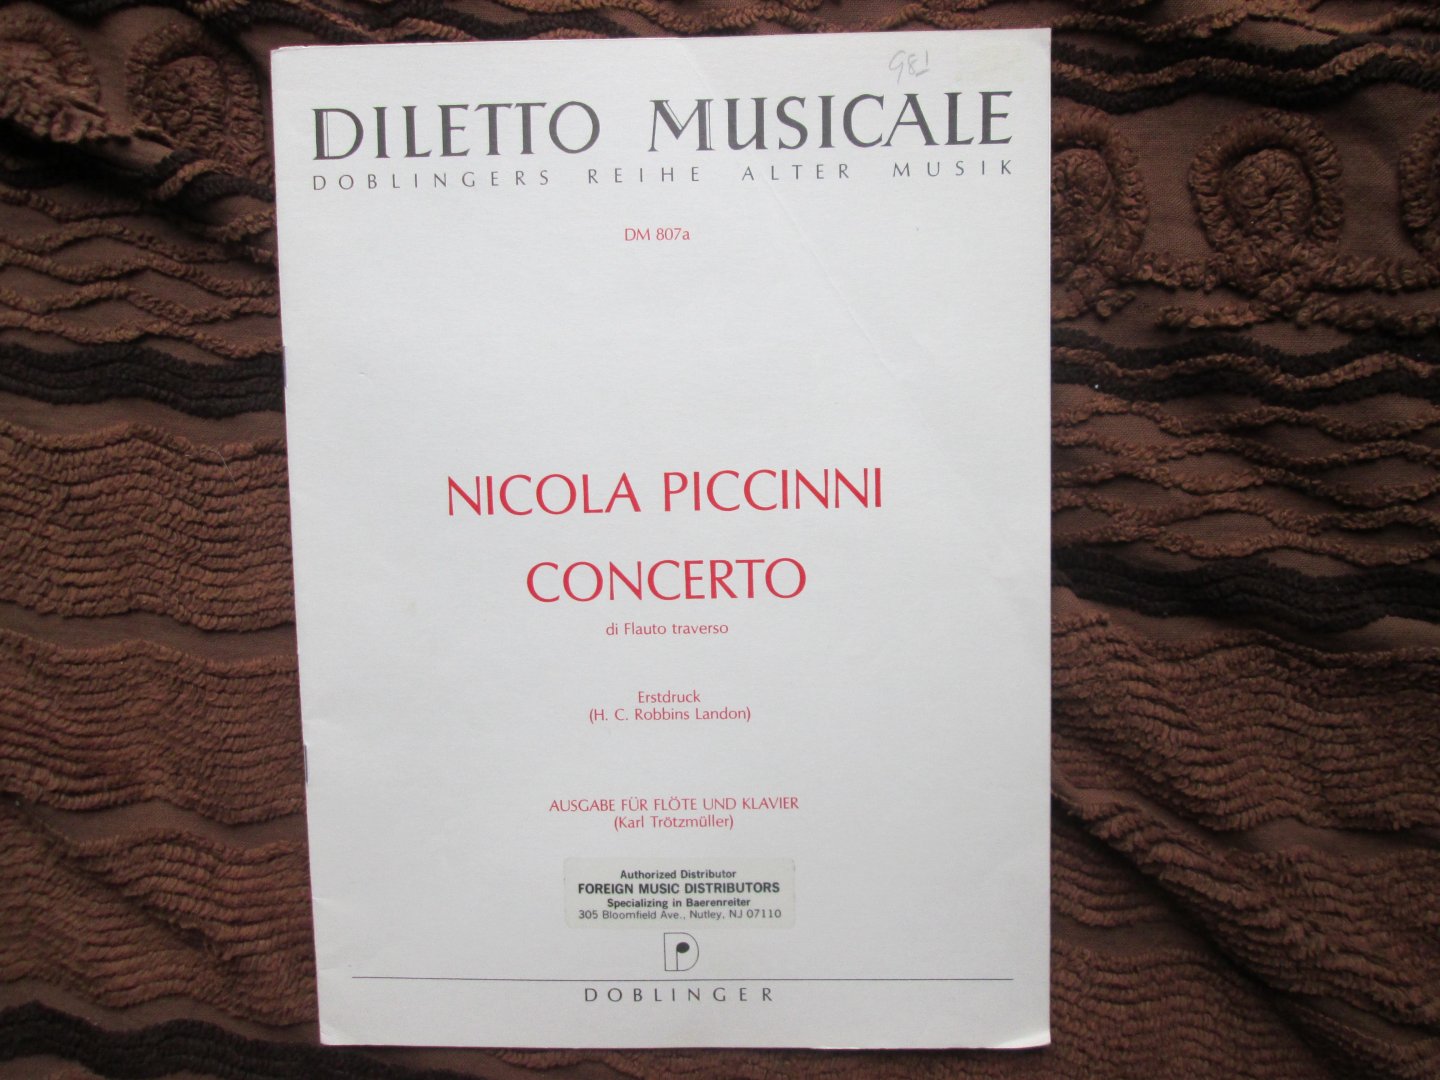 Piccinni , Nicola ( 1728 - 1800 ) - CONCERTO di Flauto Traverso